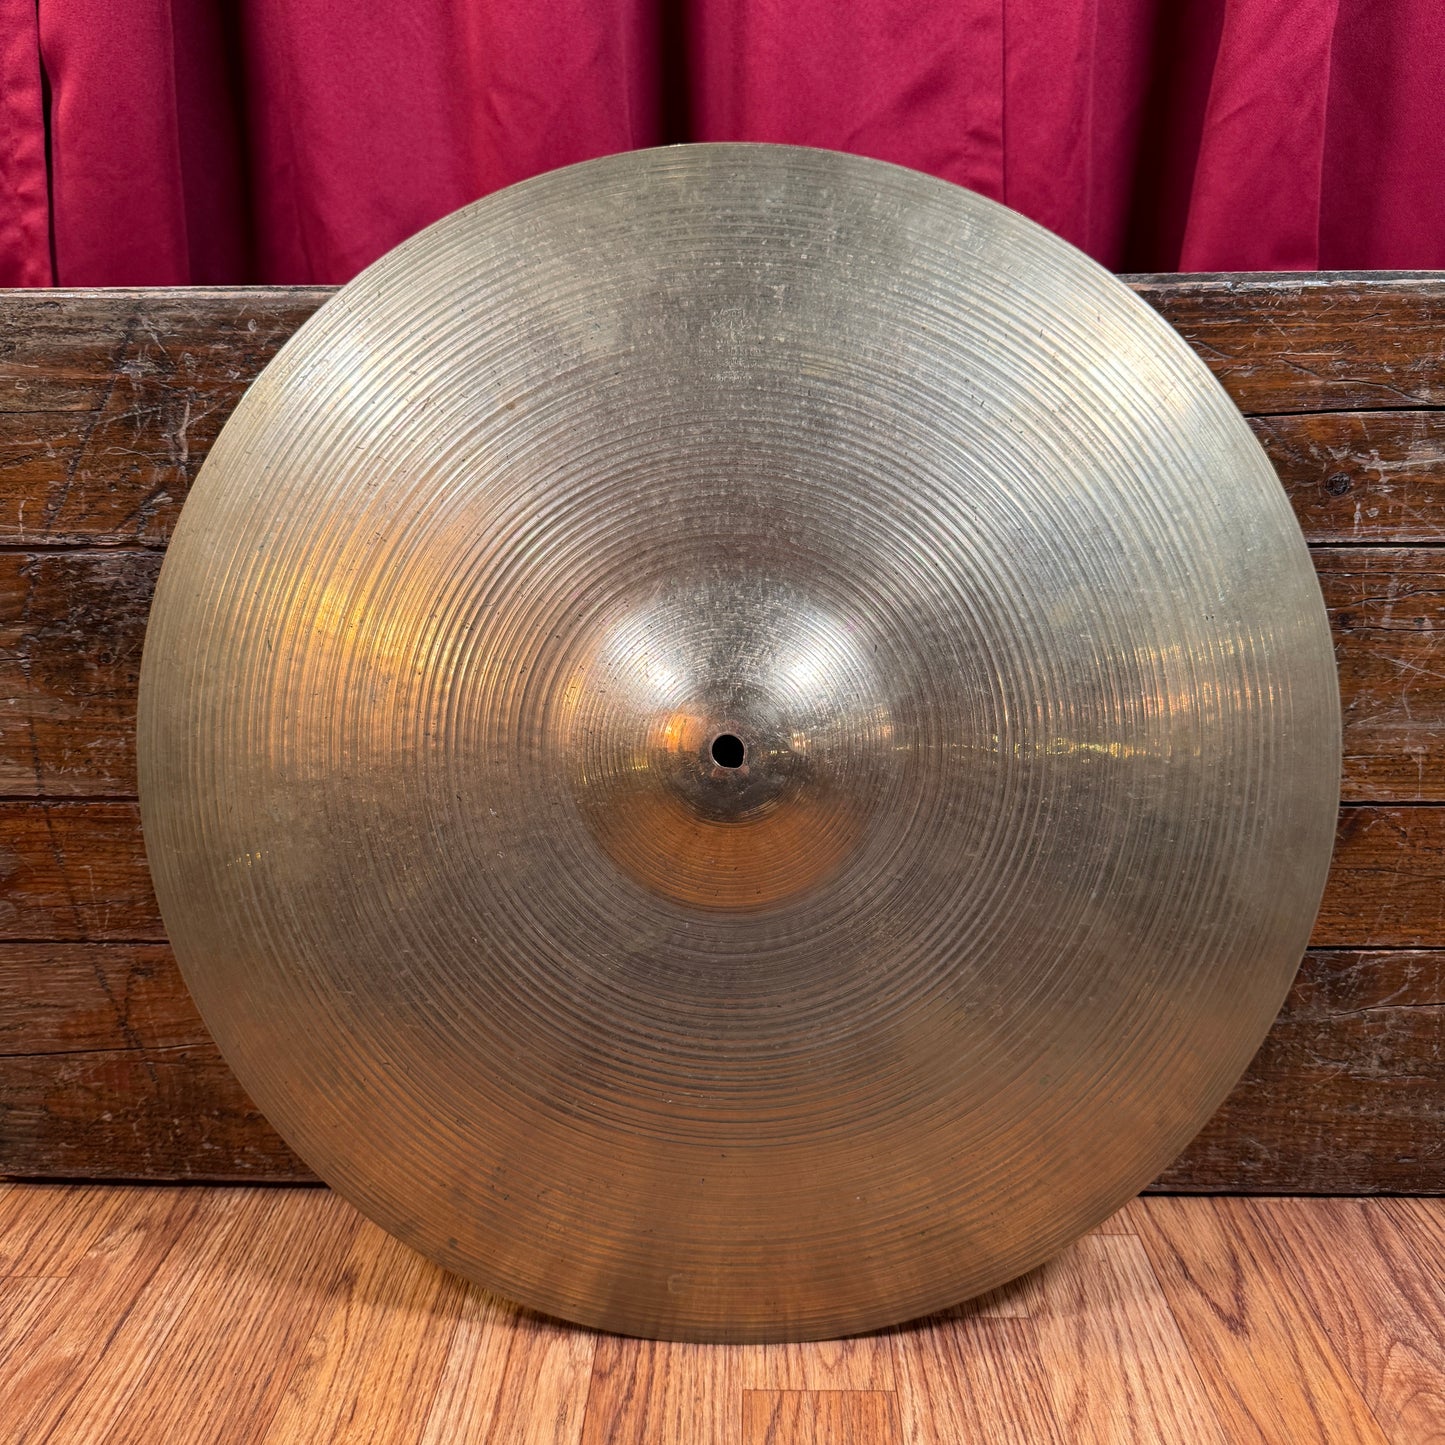 20" Zildjian A 1970s Ride Cymbal 2514g *Video Demo*